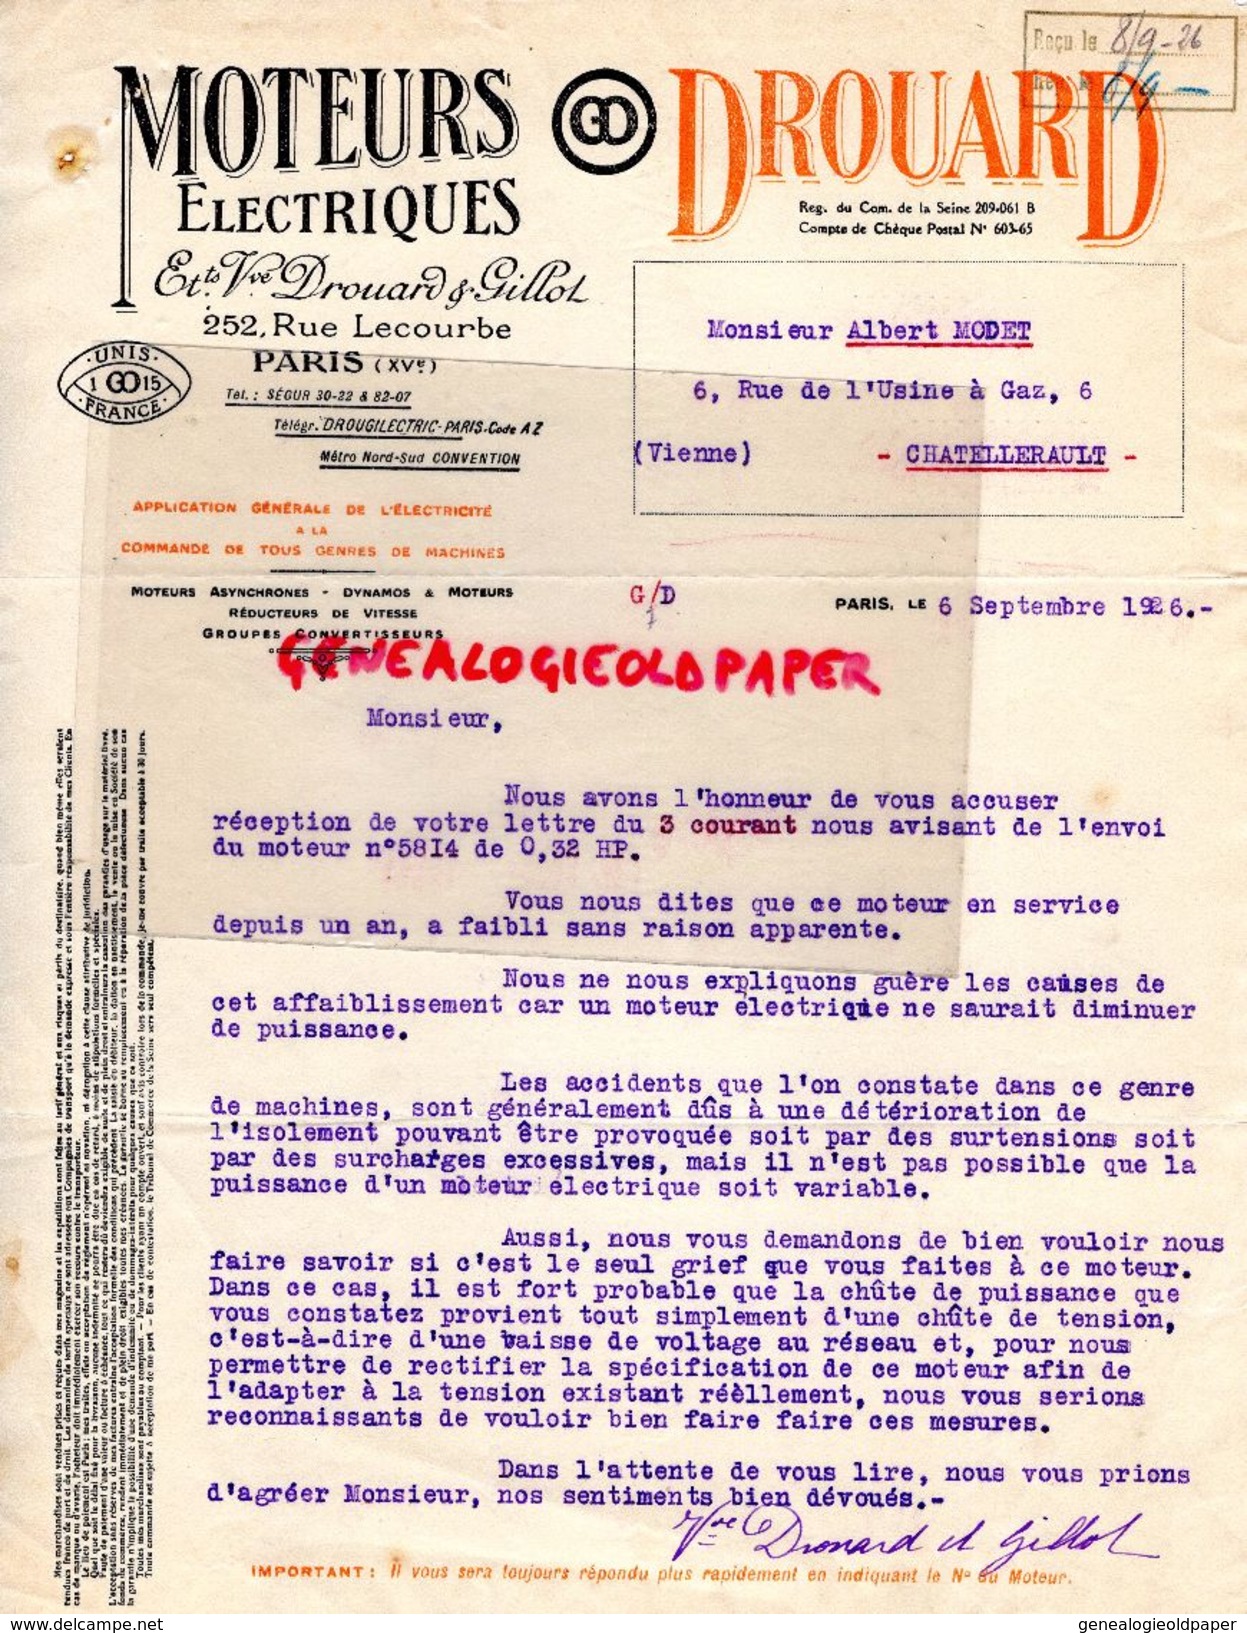 75-PARIS- LETTRE MOTEURS ELECTRIQUES -DYNAMO-DROUARD- GILLOT-252 RUE LECOURBE- ALBERT MODET CHATELLERAULT- 1926 - Cars